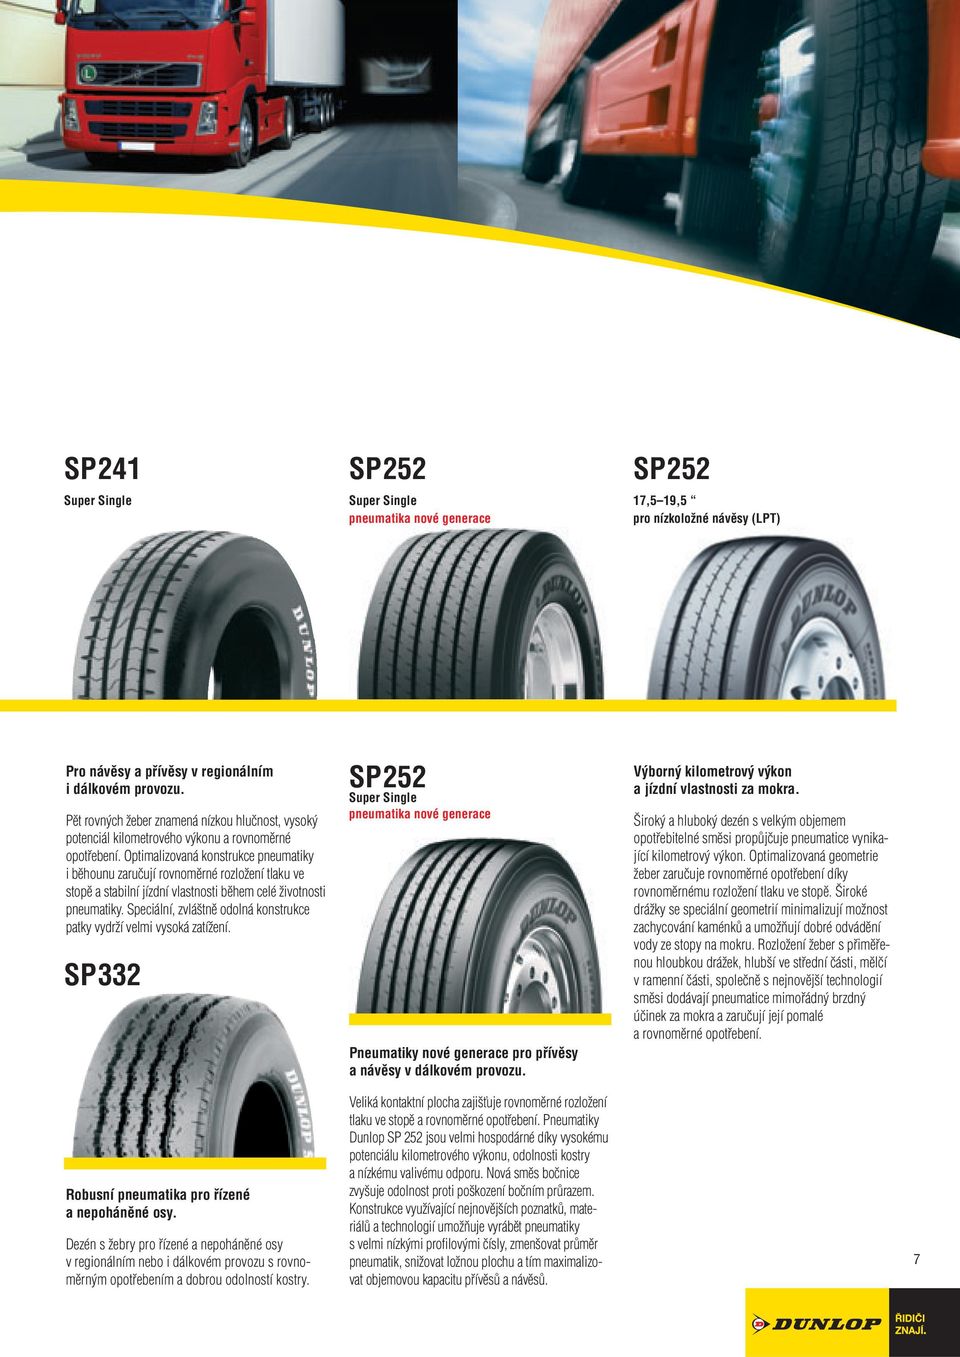 Optimalizovaná konstrukce pneumatiky i běhounu zaručují rovnoměrné rozložení tlaku ve stopě a stabilní jízdní vlastnosti během celé životnosti pneumatiky.